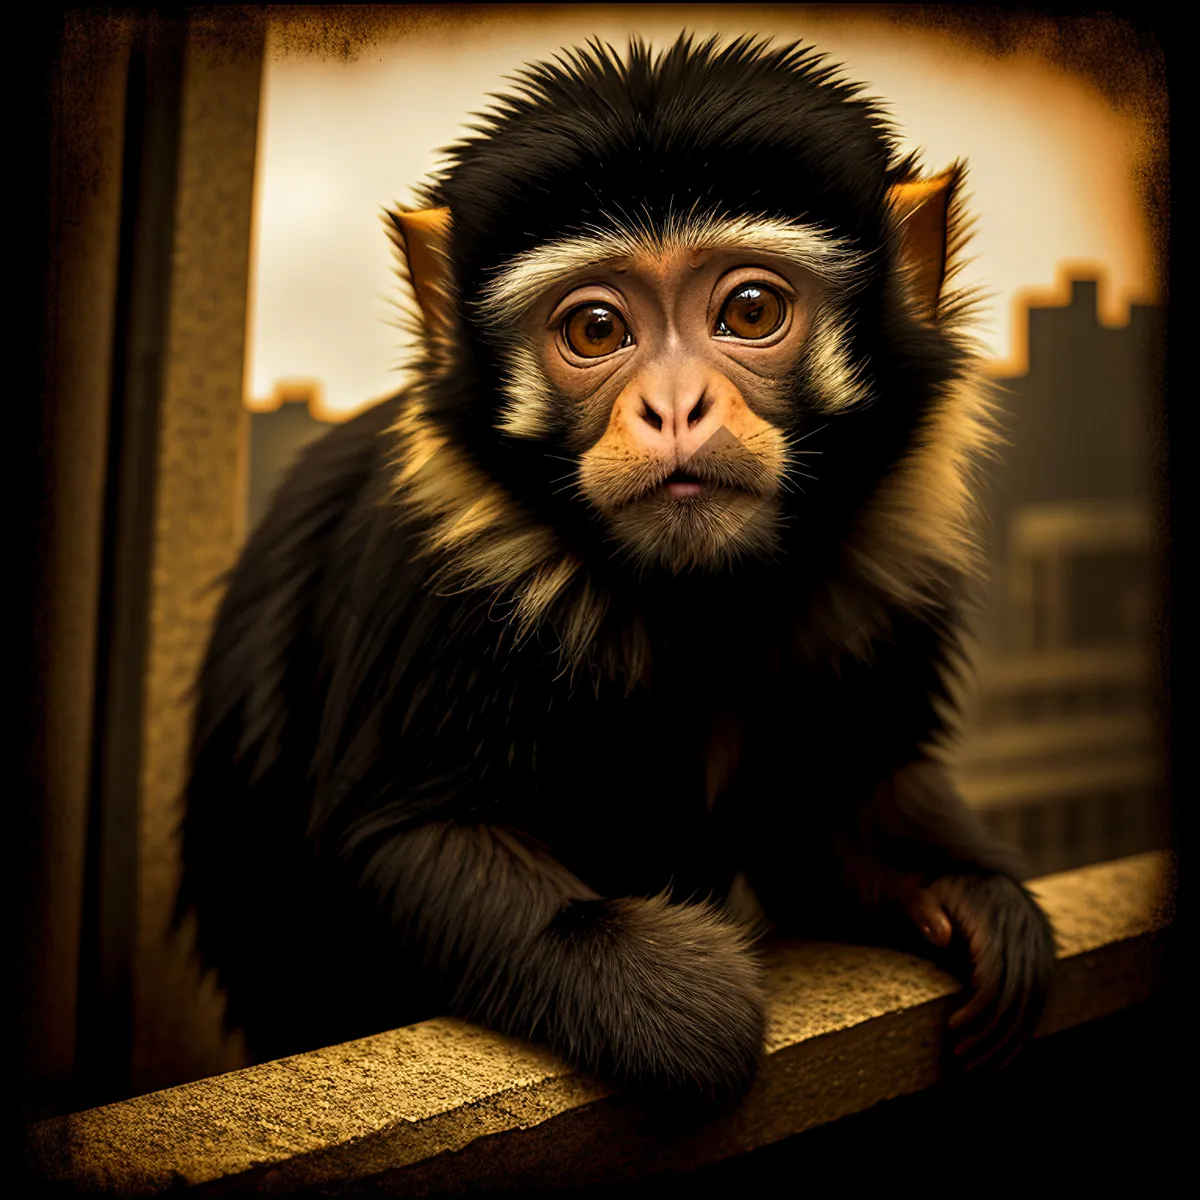 Picture of Wild Primate Portrait in Jungle